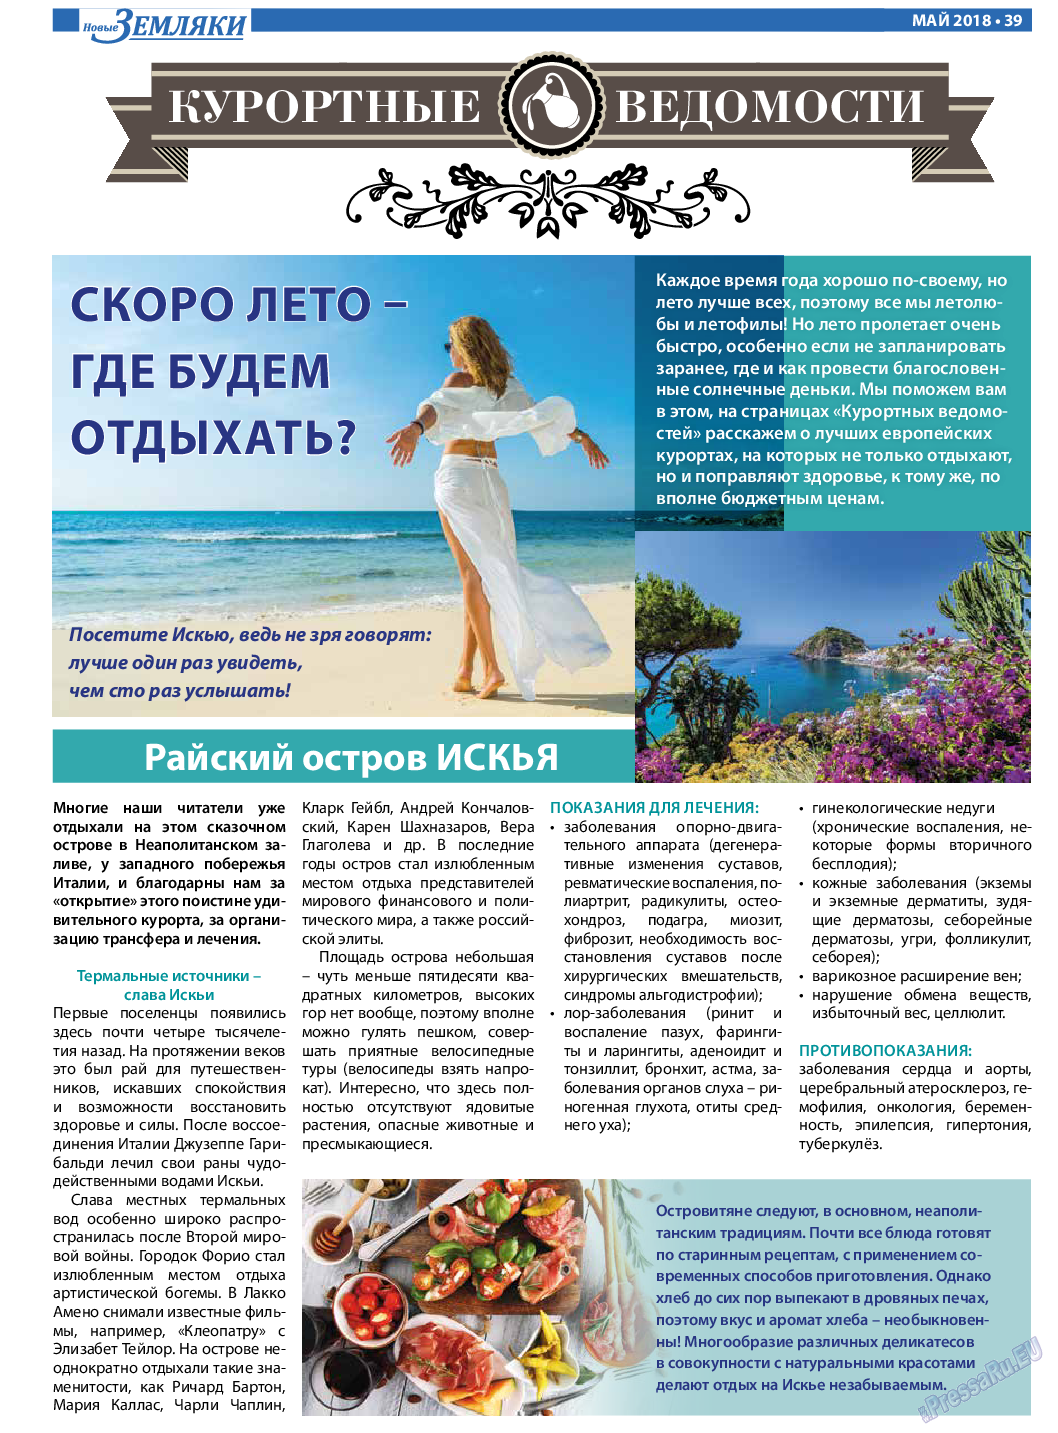 Новые Земляки, газета. 2018 №5 стр.39